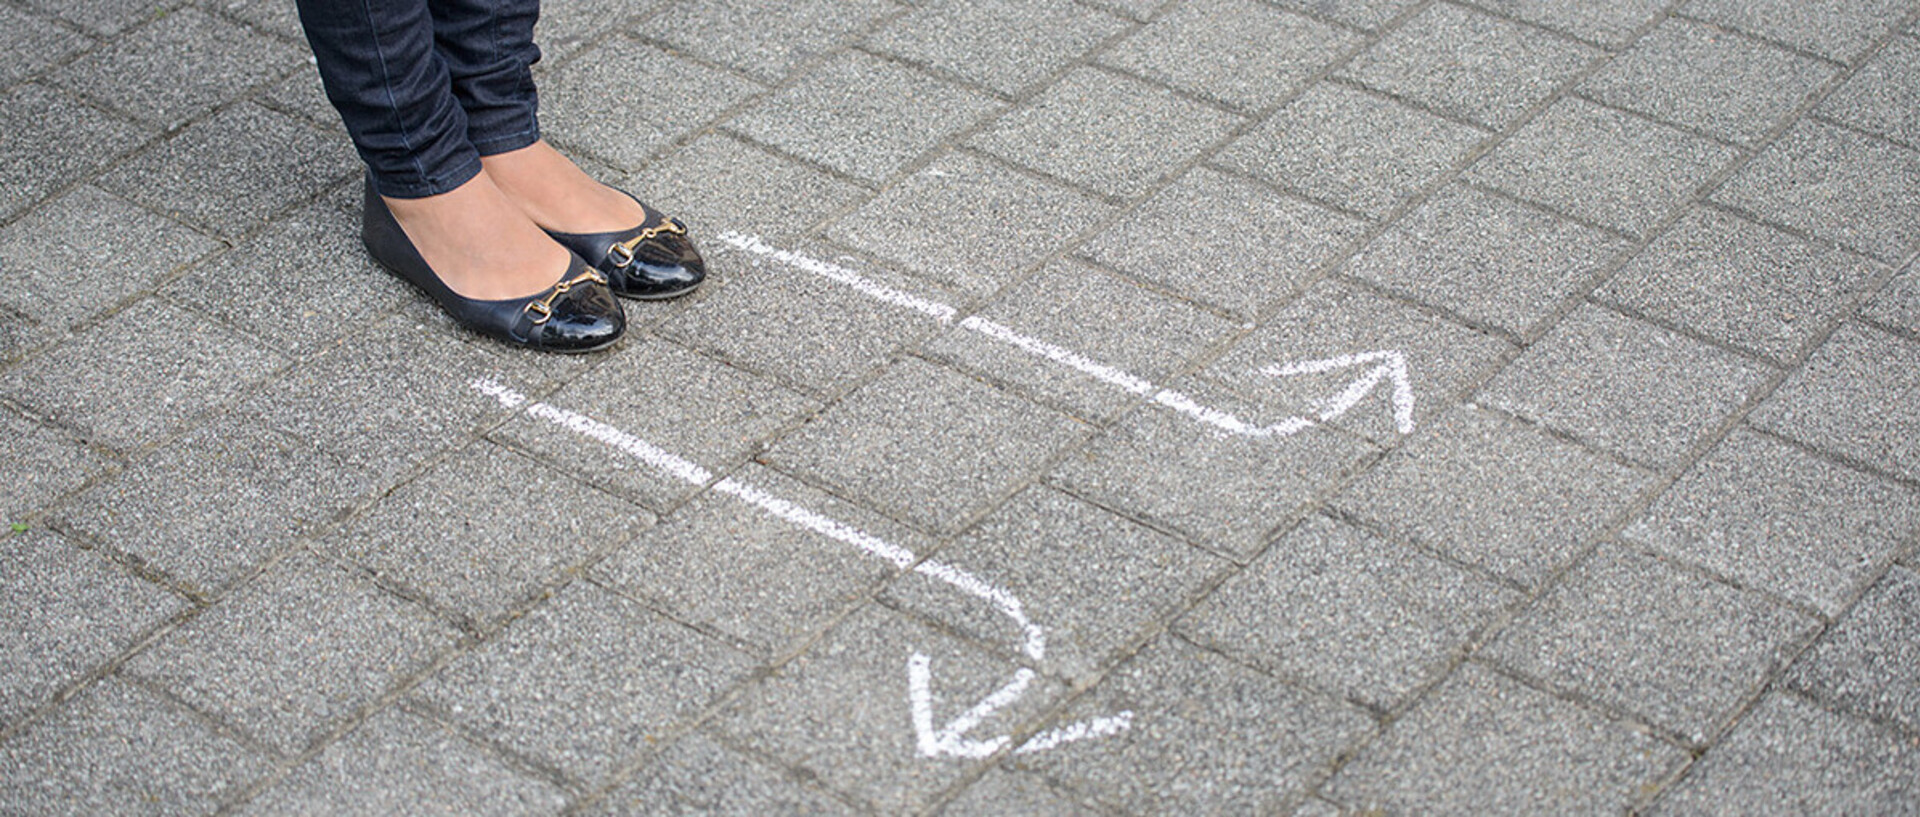 Beine und Füße einer Frau auf dem Boden stehend. Vor ihr sind mit Kreide Pfeile nach links und rechts auf den Boden gemalt.